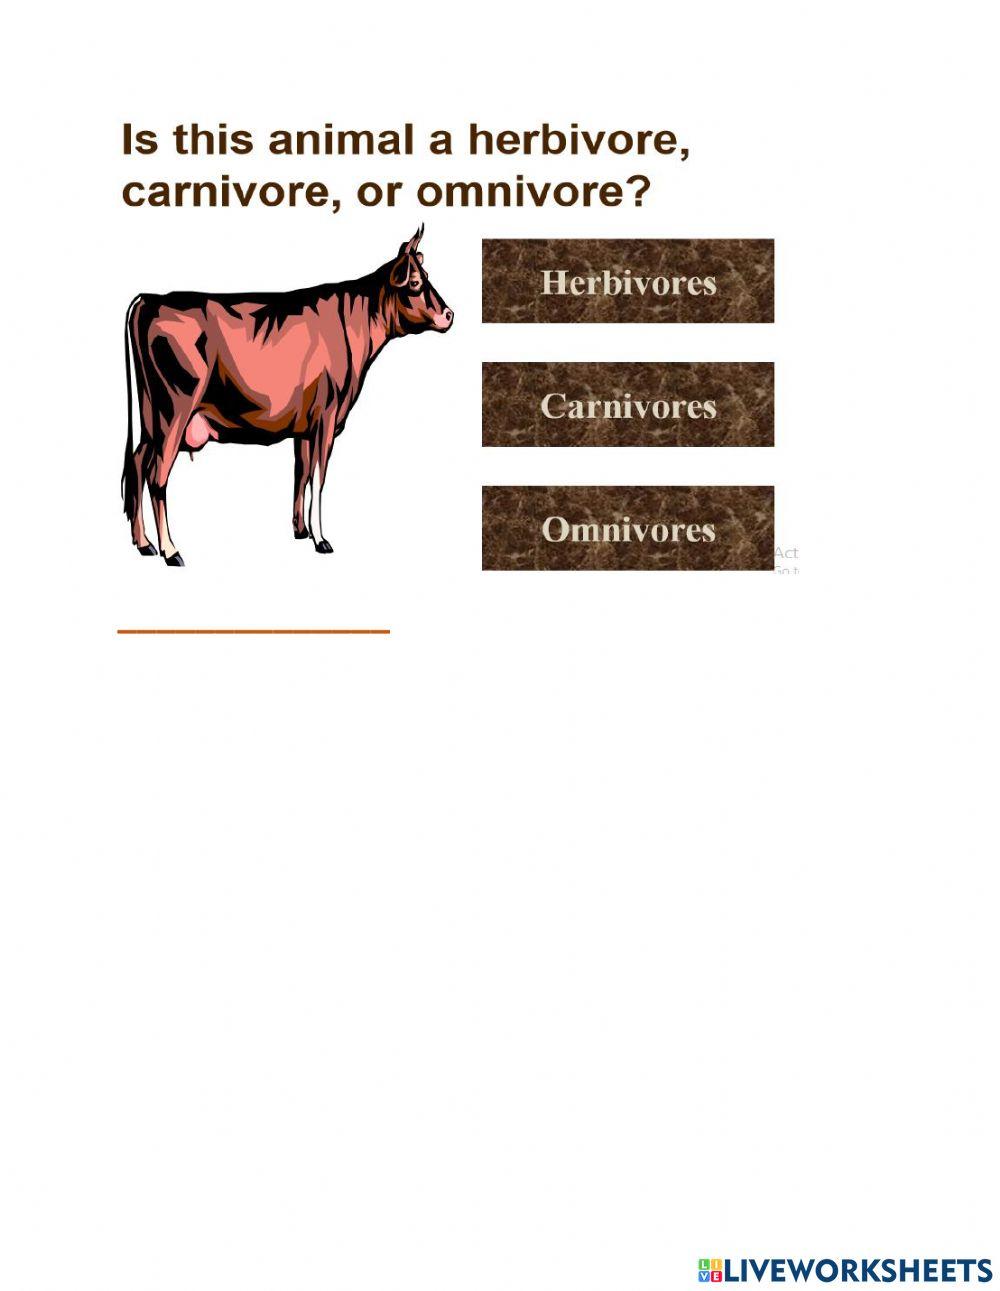 Carnivore herbivore herbivore